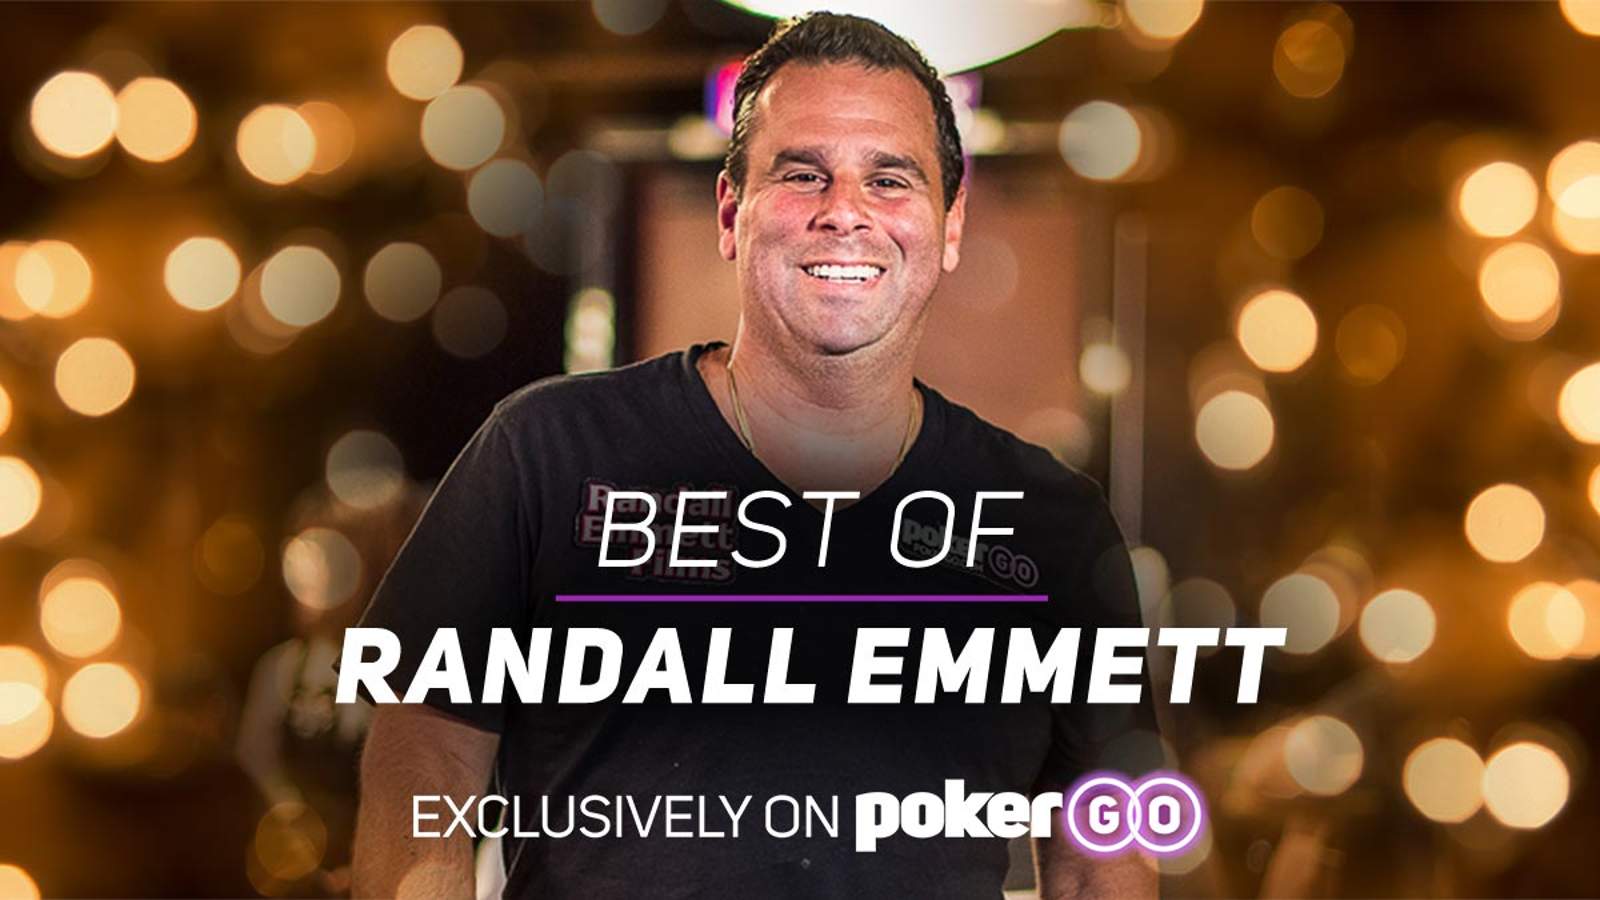 New on PokerGO: The Best of Randall Emmett